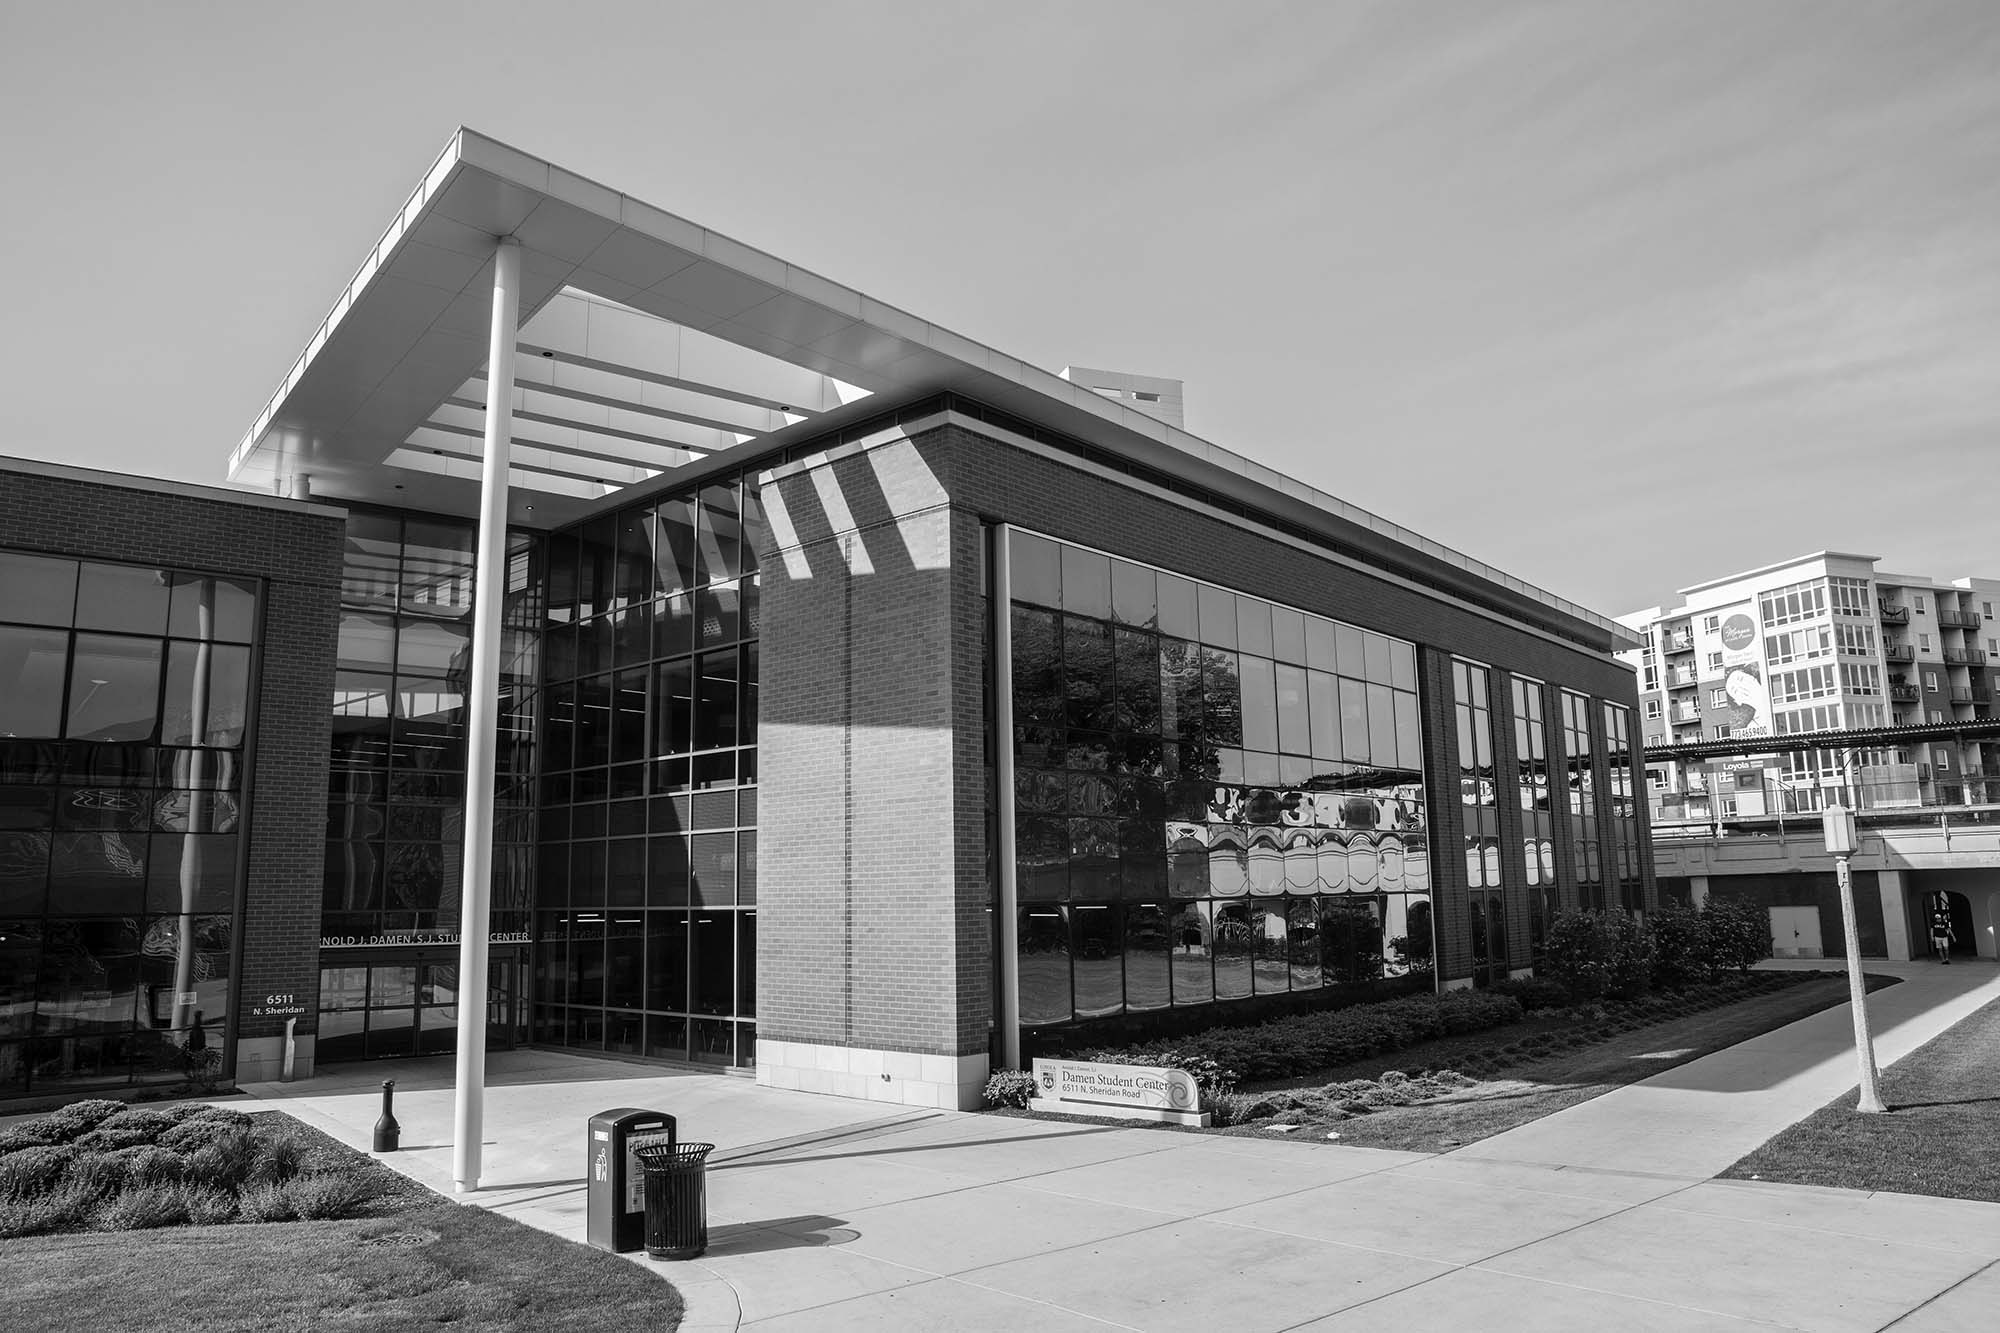 View of the Damen Student Center across from Mertz Hall